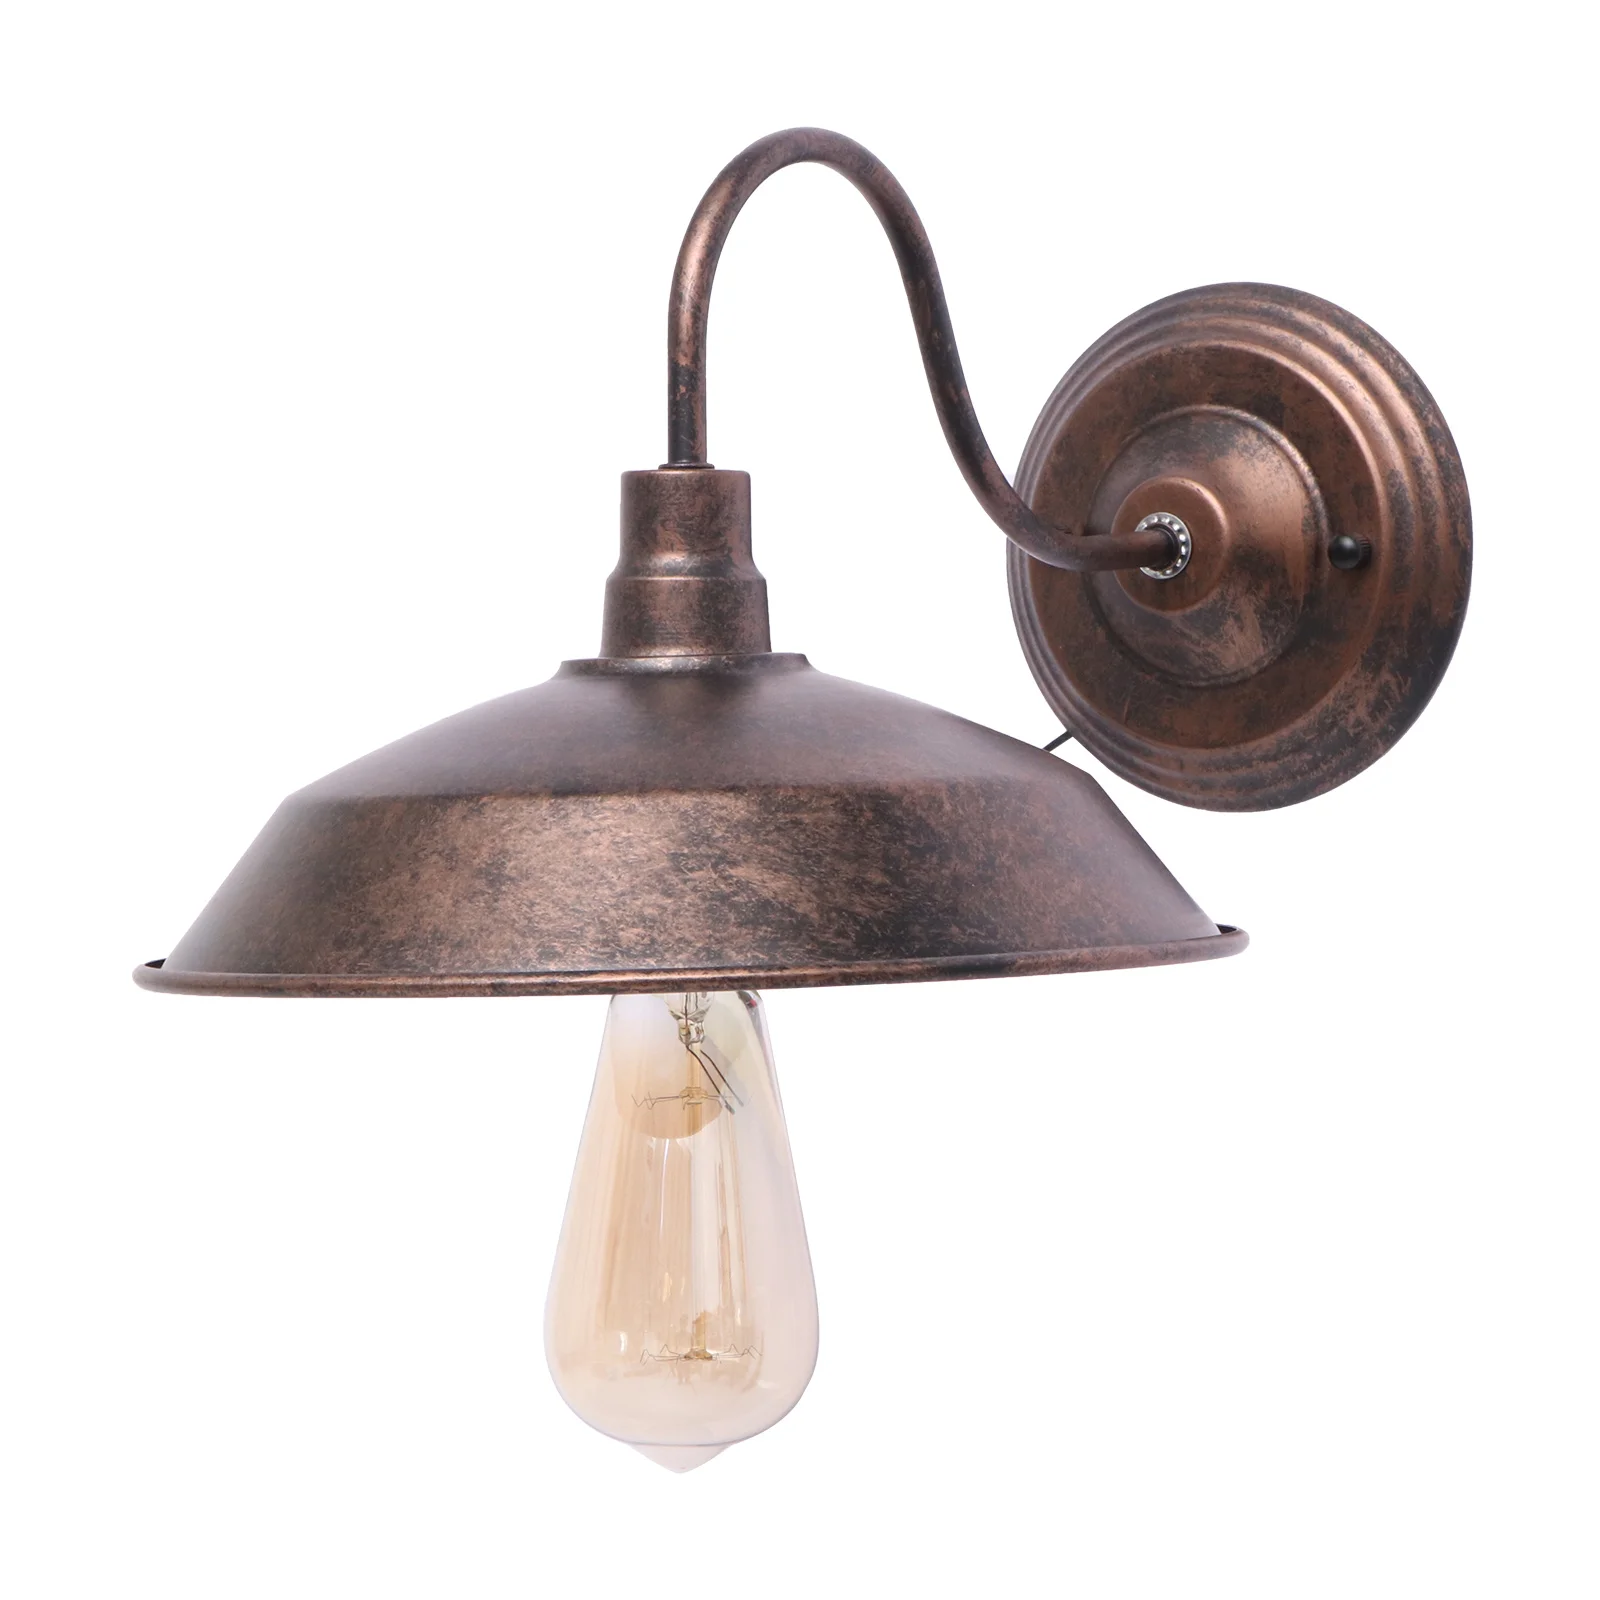 

Настенный светильник Е27, Прочная Железная декоративная лампа без лампочки, для дома, спальни, ресторана, бара, украшение, 2 шт.